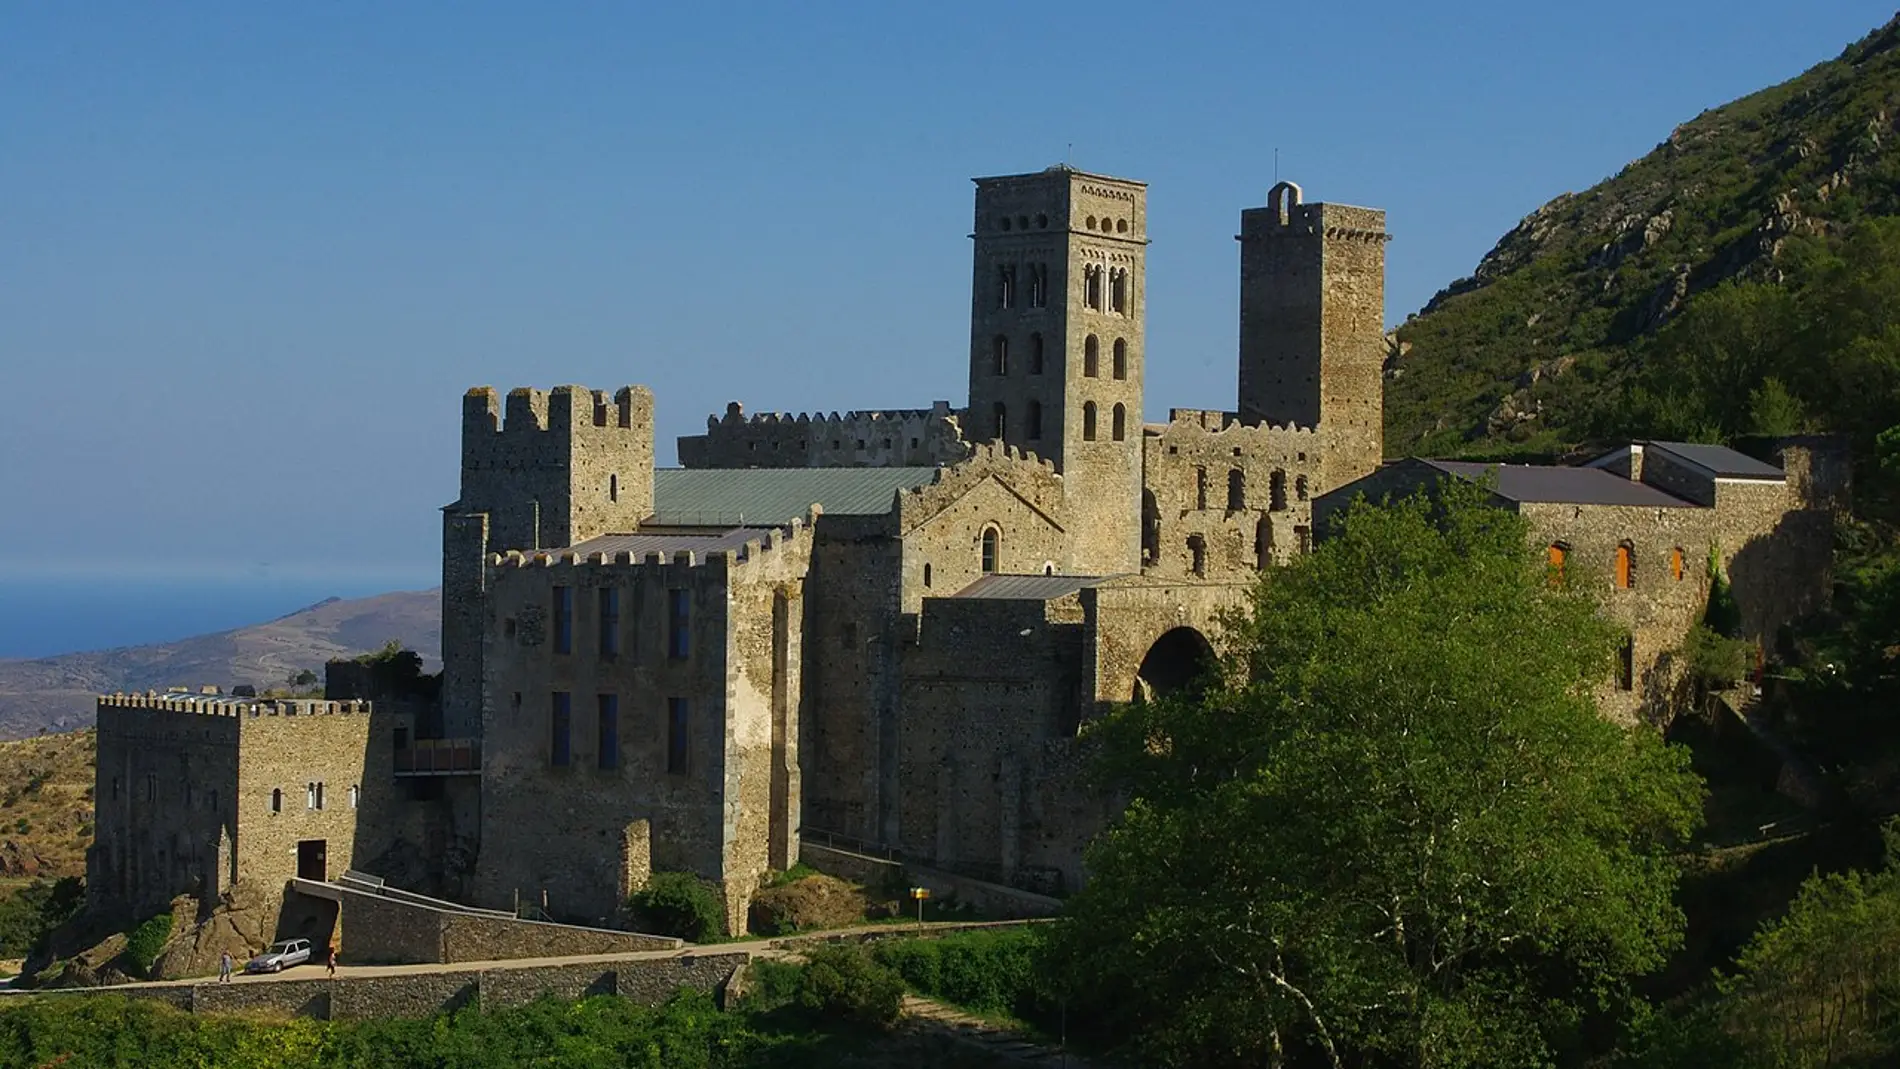 Monasterio de Sant Pere de Rodes: historia y datos curiosos que te sorprenderán